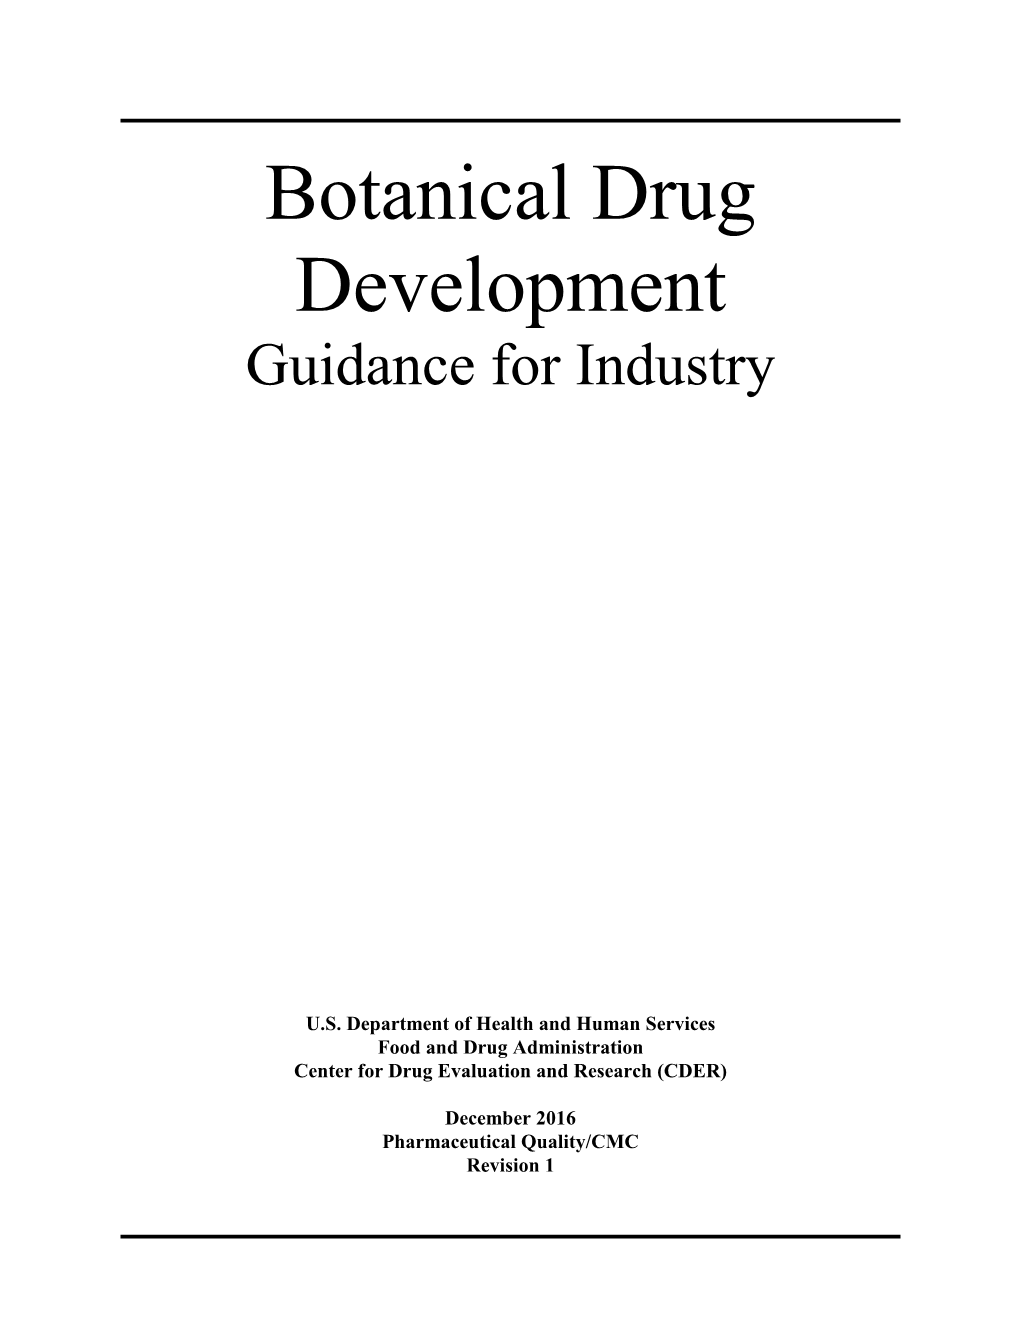 Botanical Drug Development Guidance for Industry